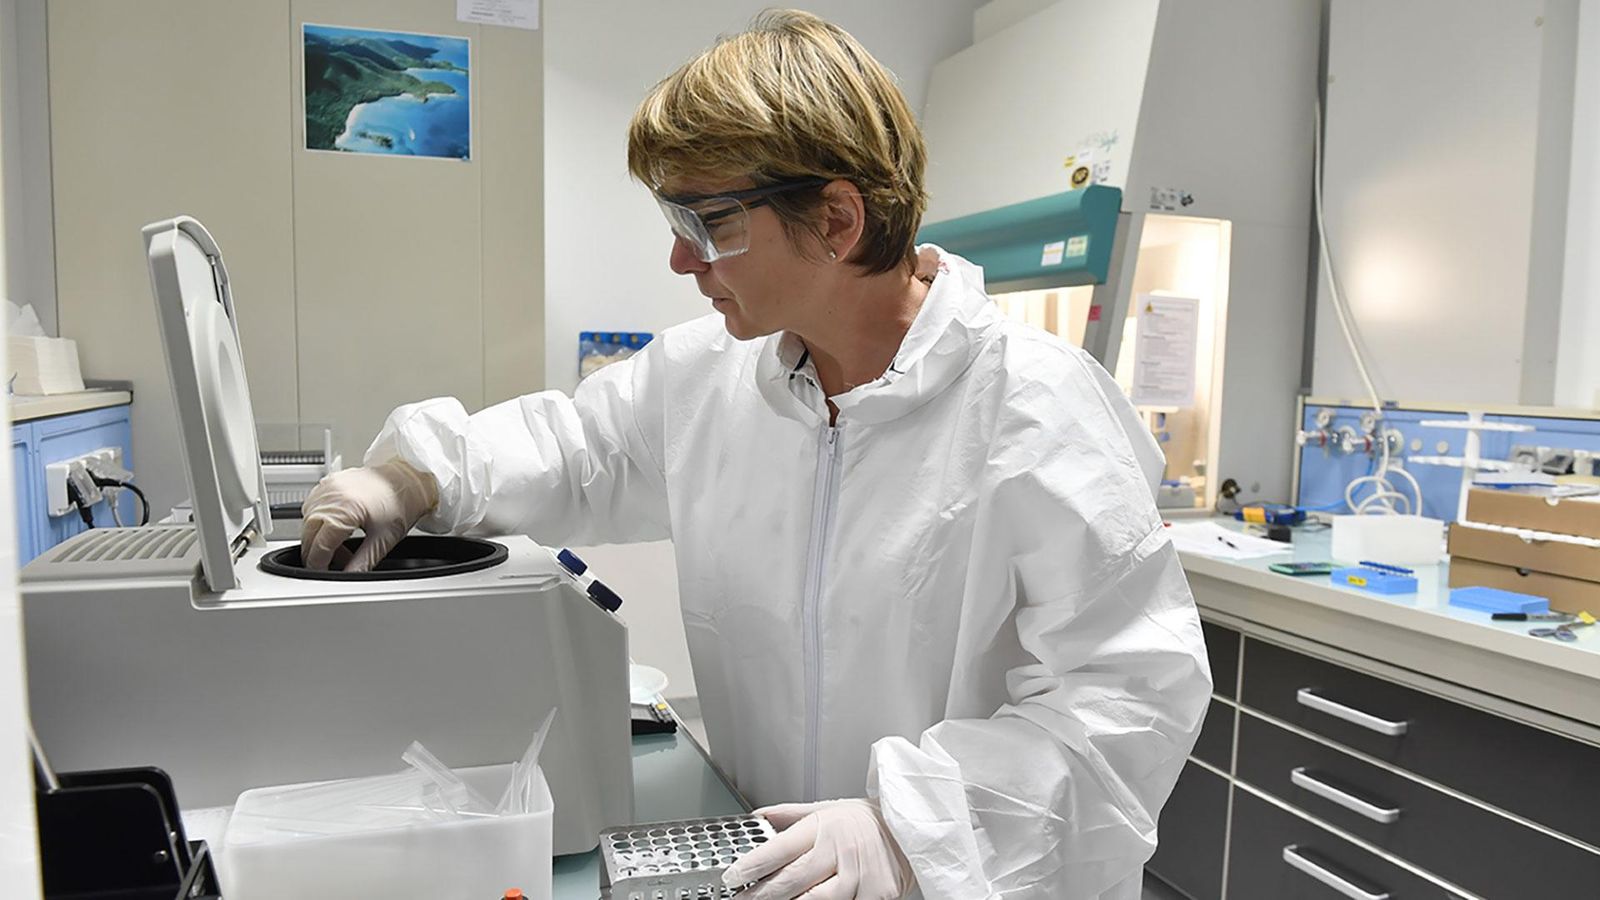 Valérie, technicien supérieur de bioanalyse, sur notre site R&D de Montpellier.